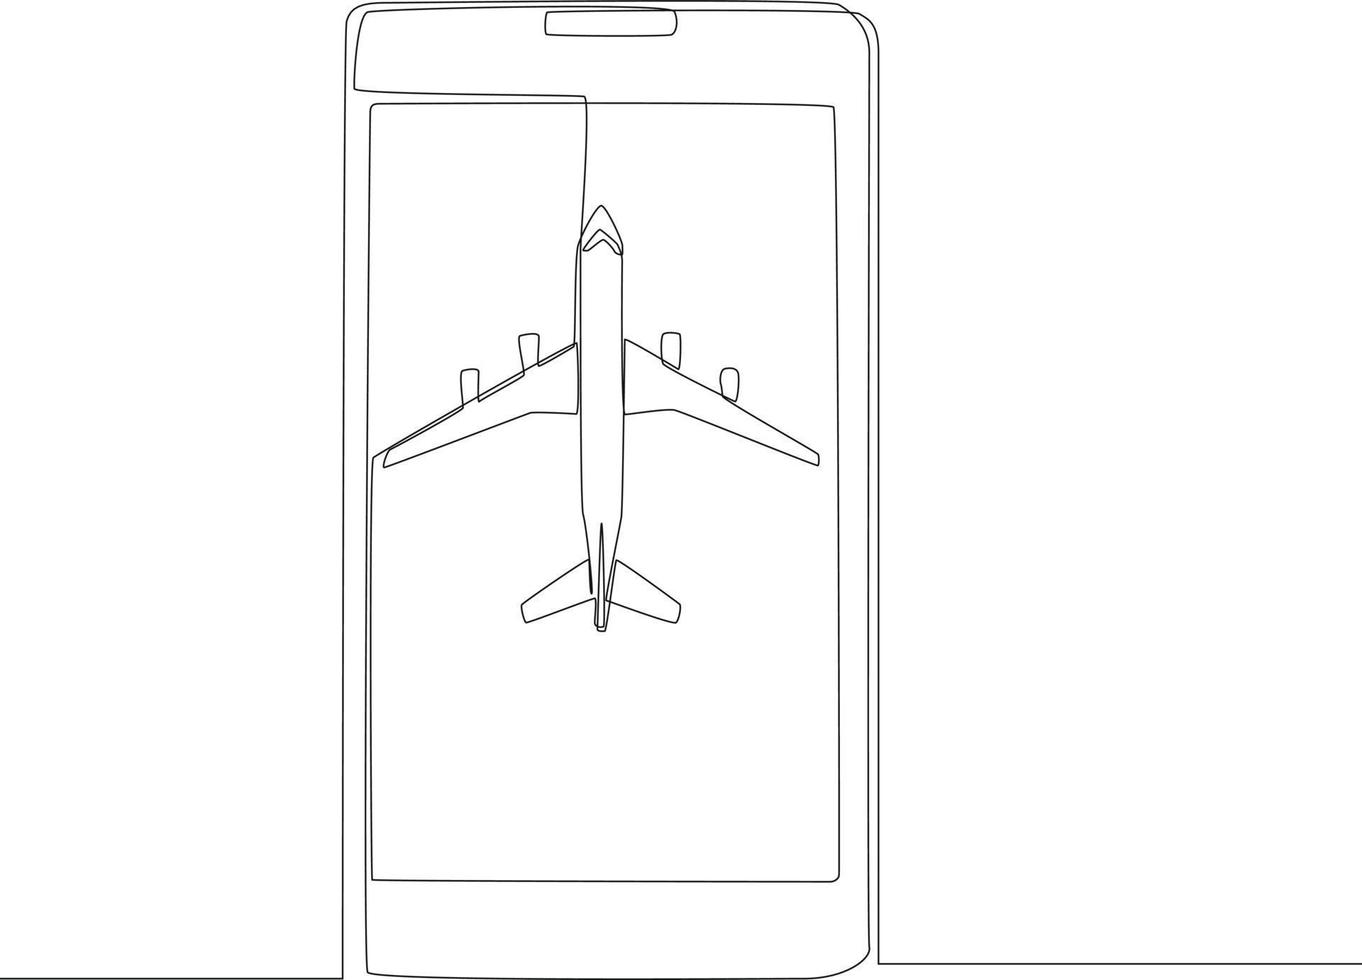 dessin en ligne continue unique de la conception à plat du concept de voyage avec avion sur fond blanc dans le smartphone. illustration vectorielle graphique de conception de dessin d'une ligne. vecteur